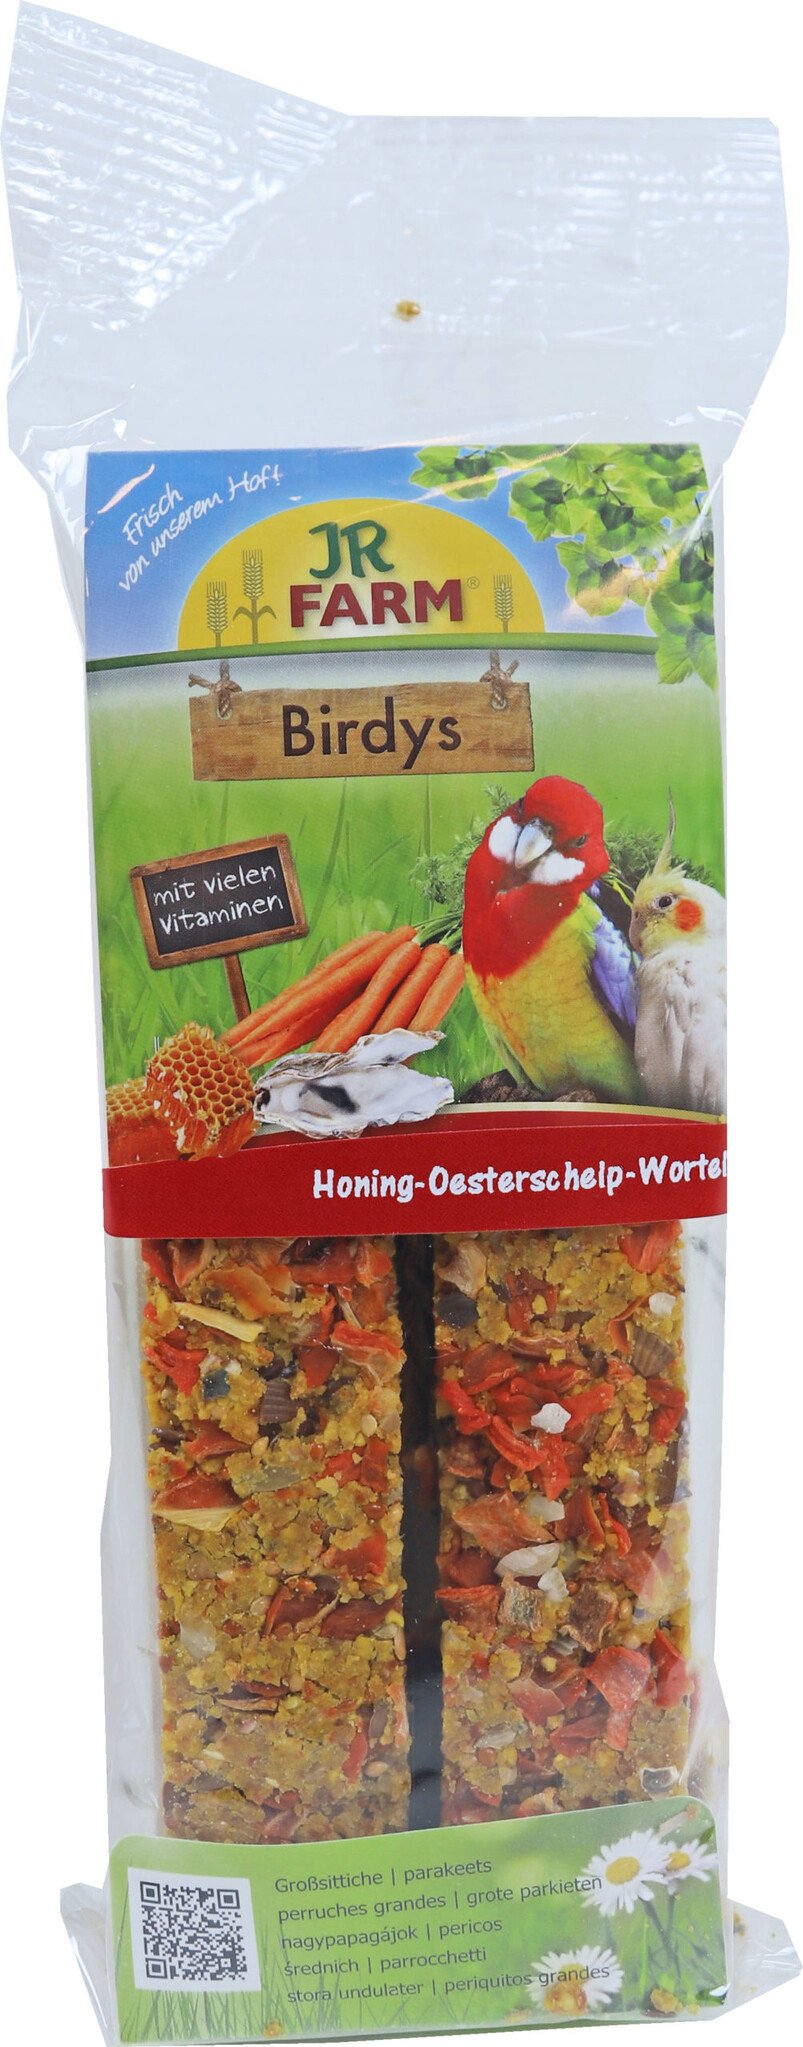 JR Farm Birdys Agapornide Honing/Oesterschelp/Wortelen 260 Gram